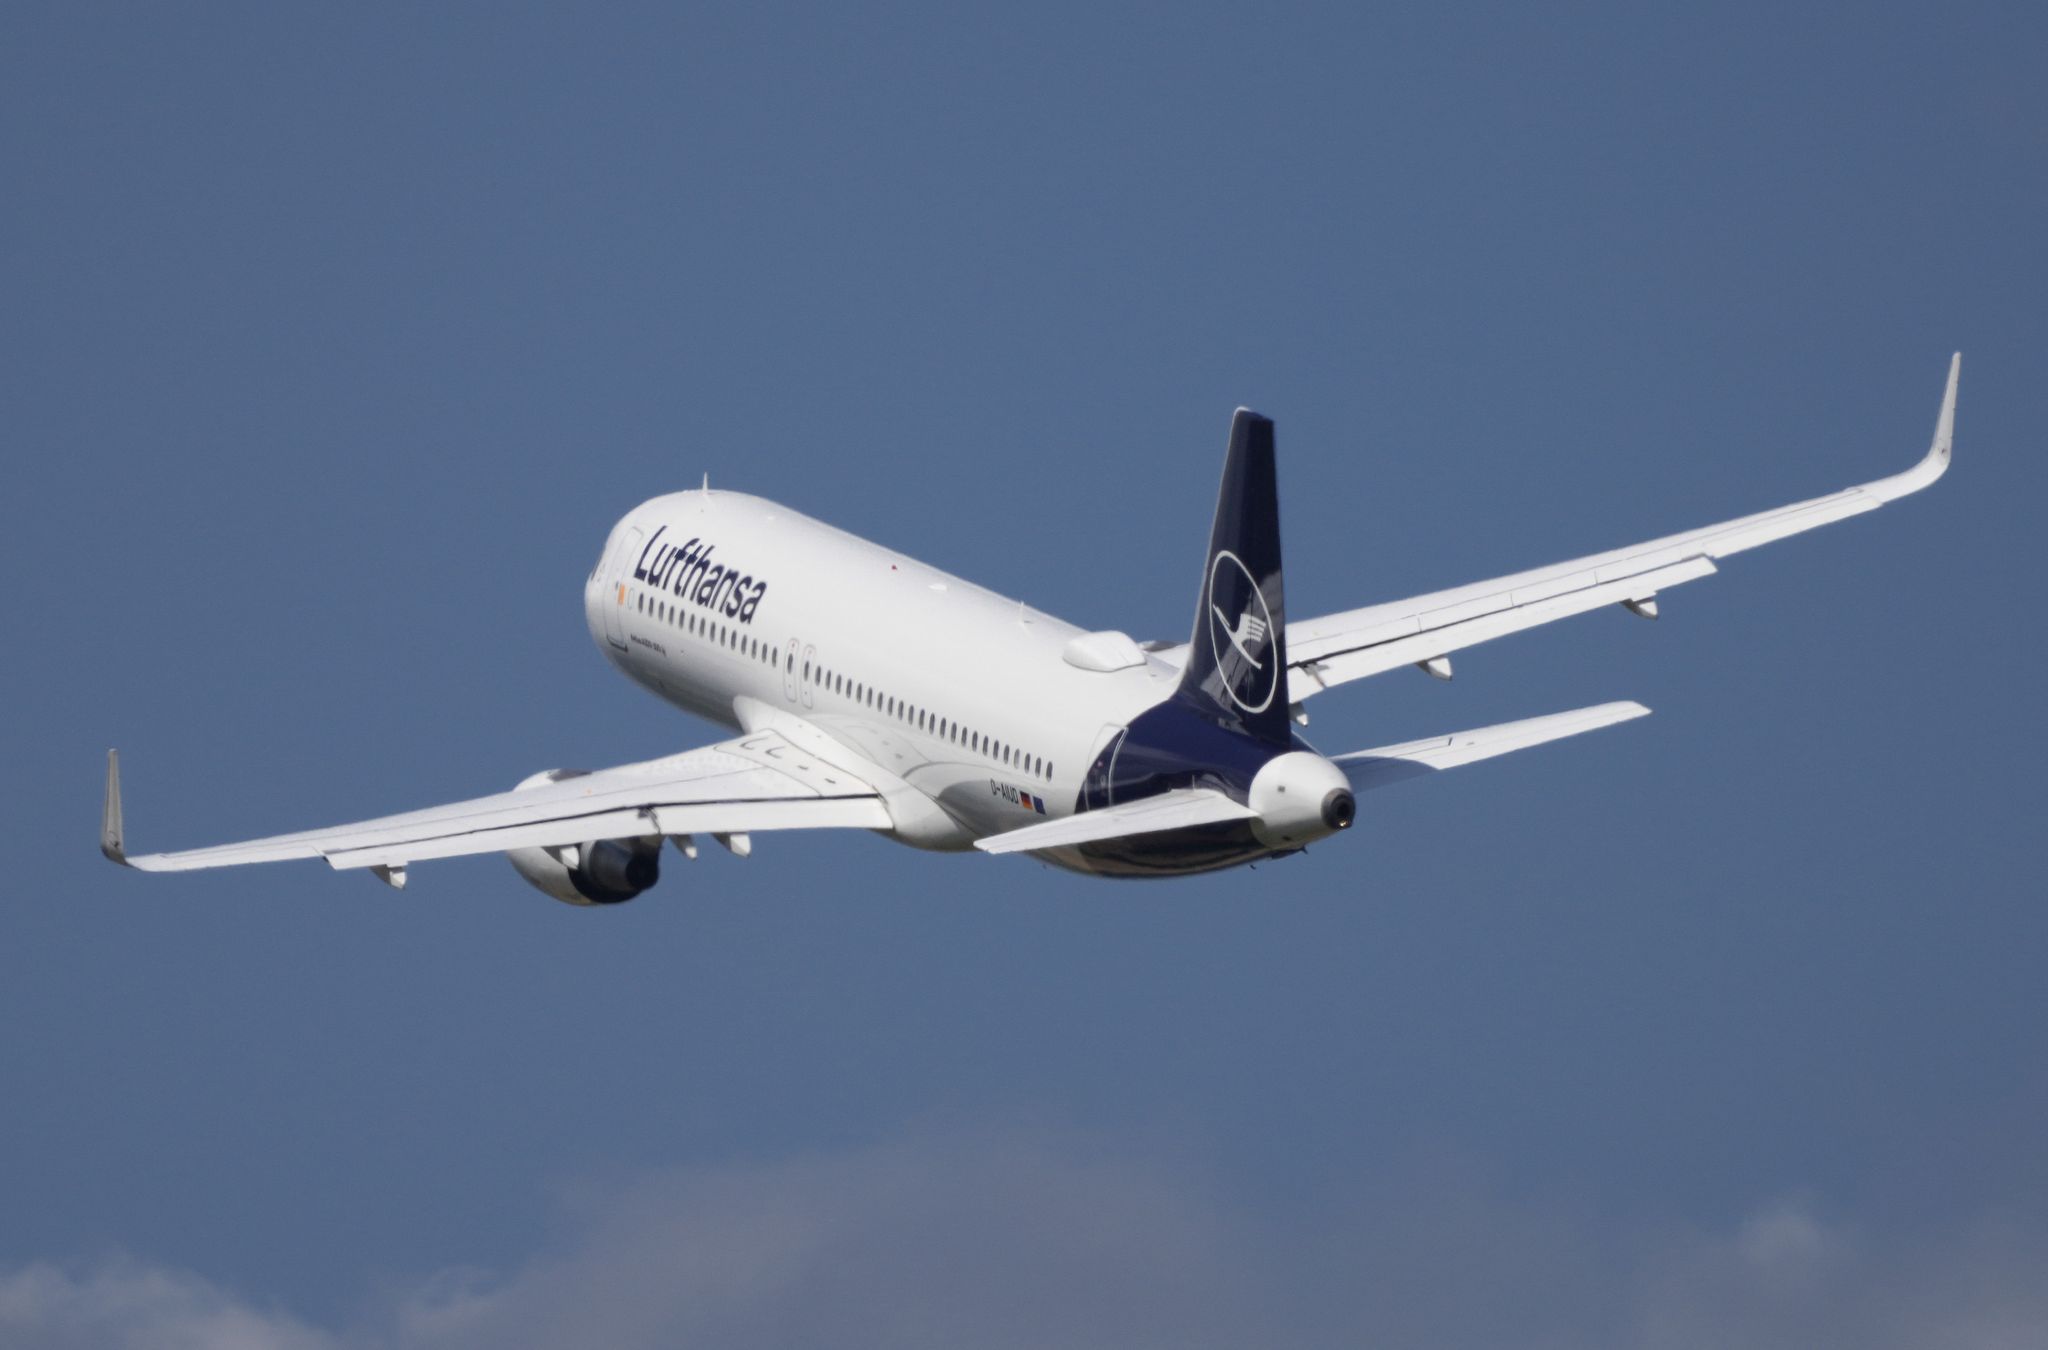 Lufthansa hat sich eine Rüge der britischen Werbeaufsicht eingehandelt.